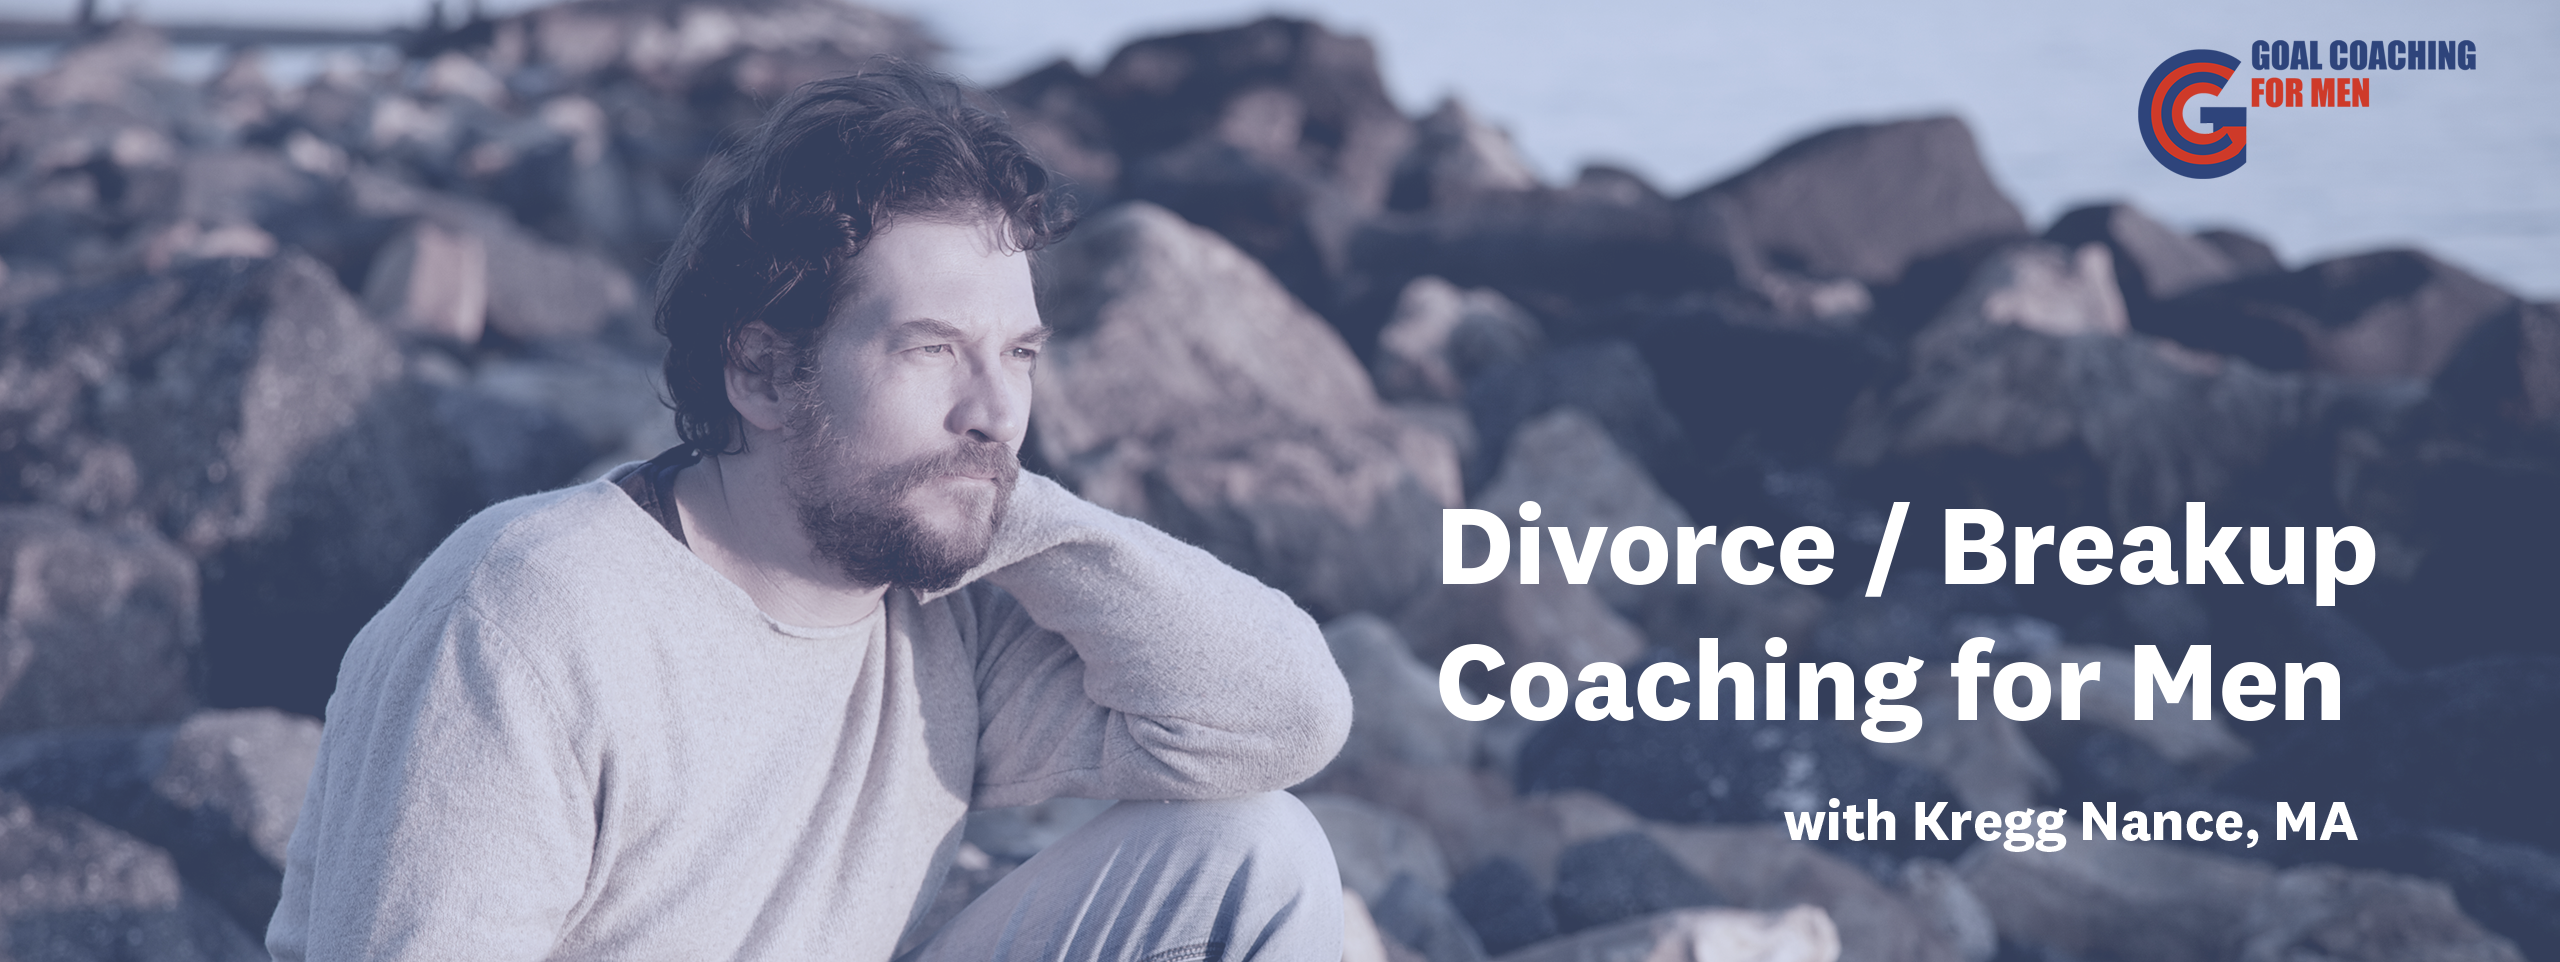 Kregg Nance Divorce Breakup Coaching for Men